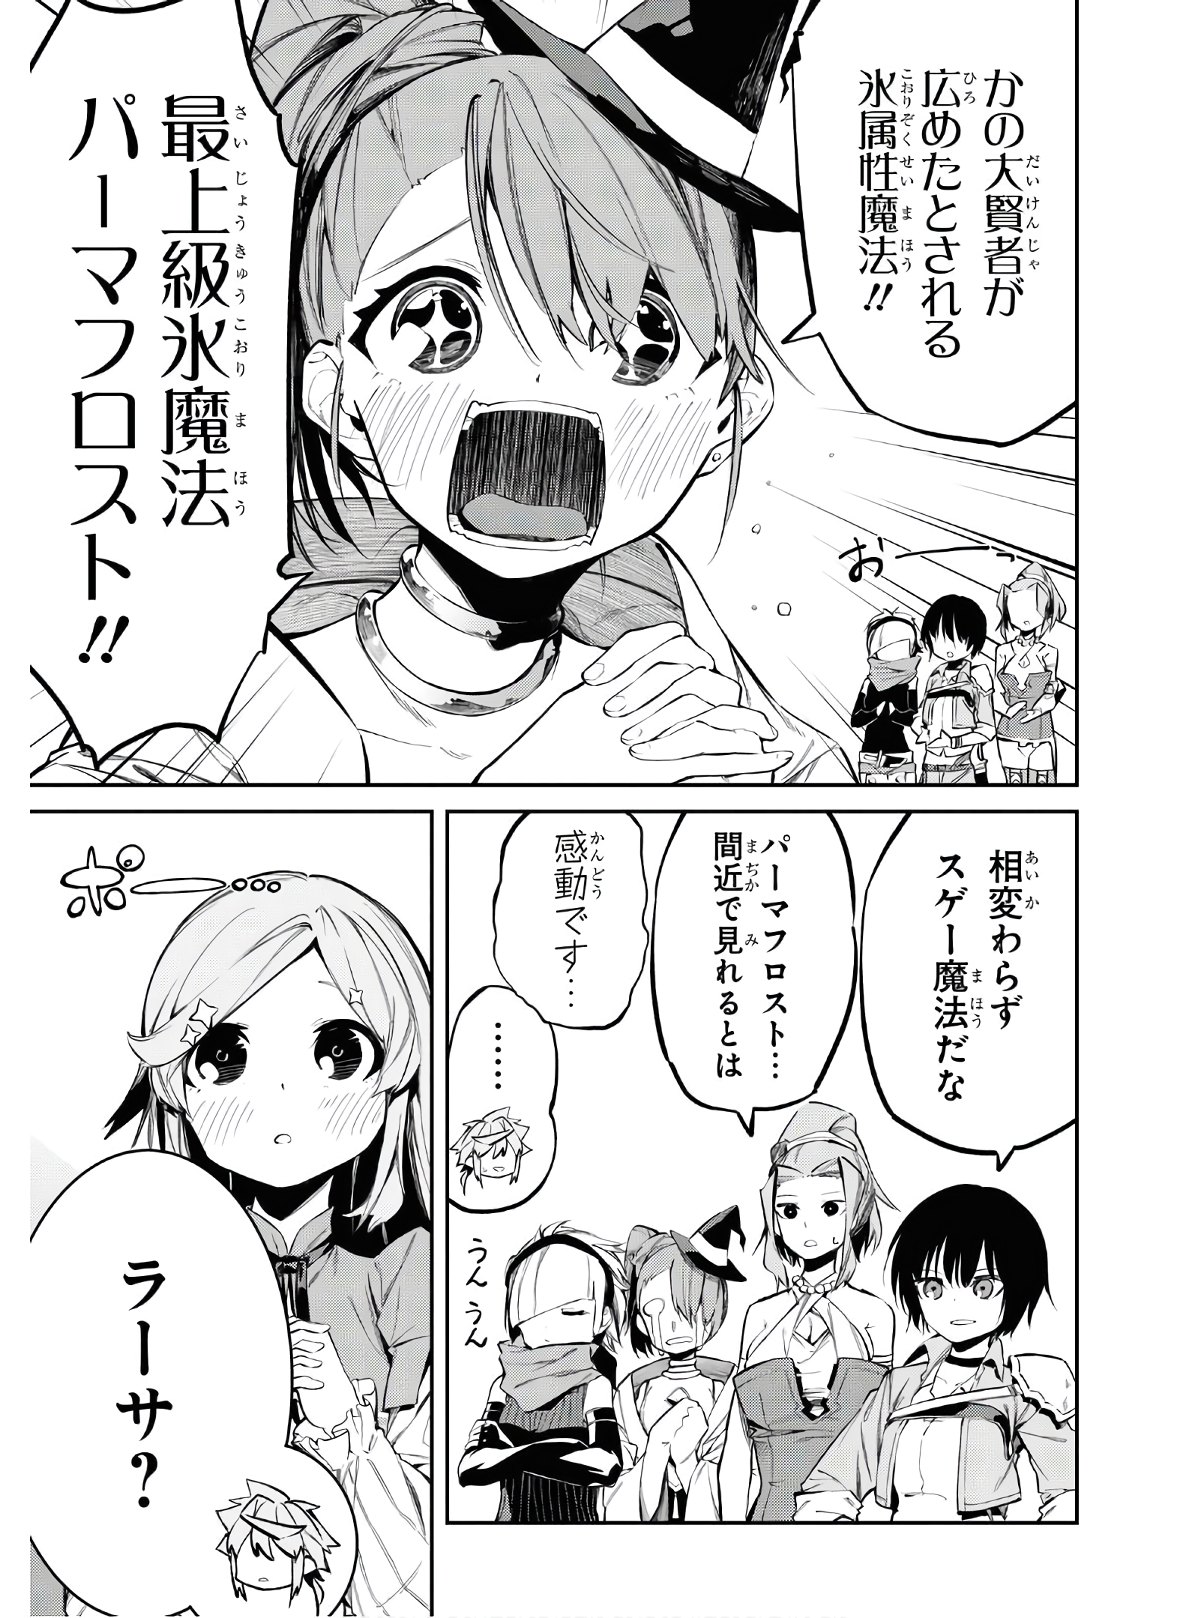 Maryoku 0 de Saikyou no Daikenja ~Sore wa Mahou dewa Nai, Butsuri da!~ - Chapter 4 - Page 25